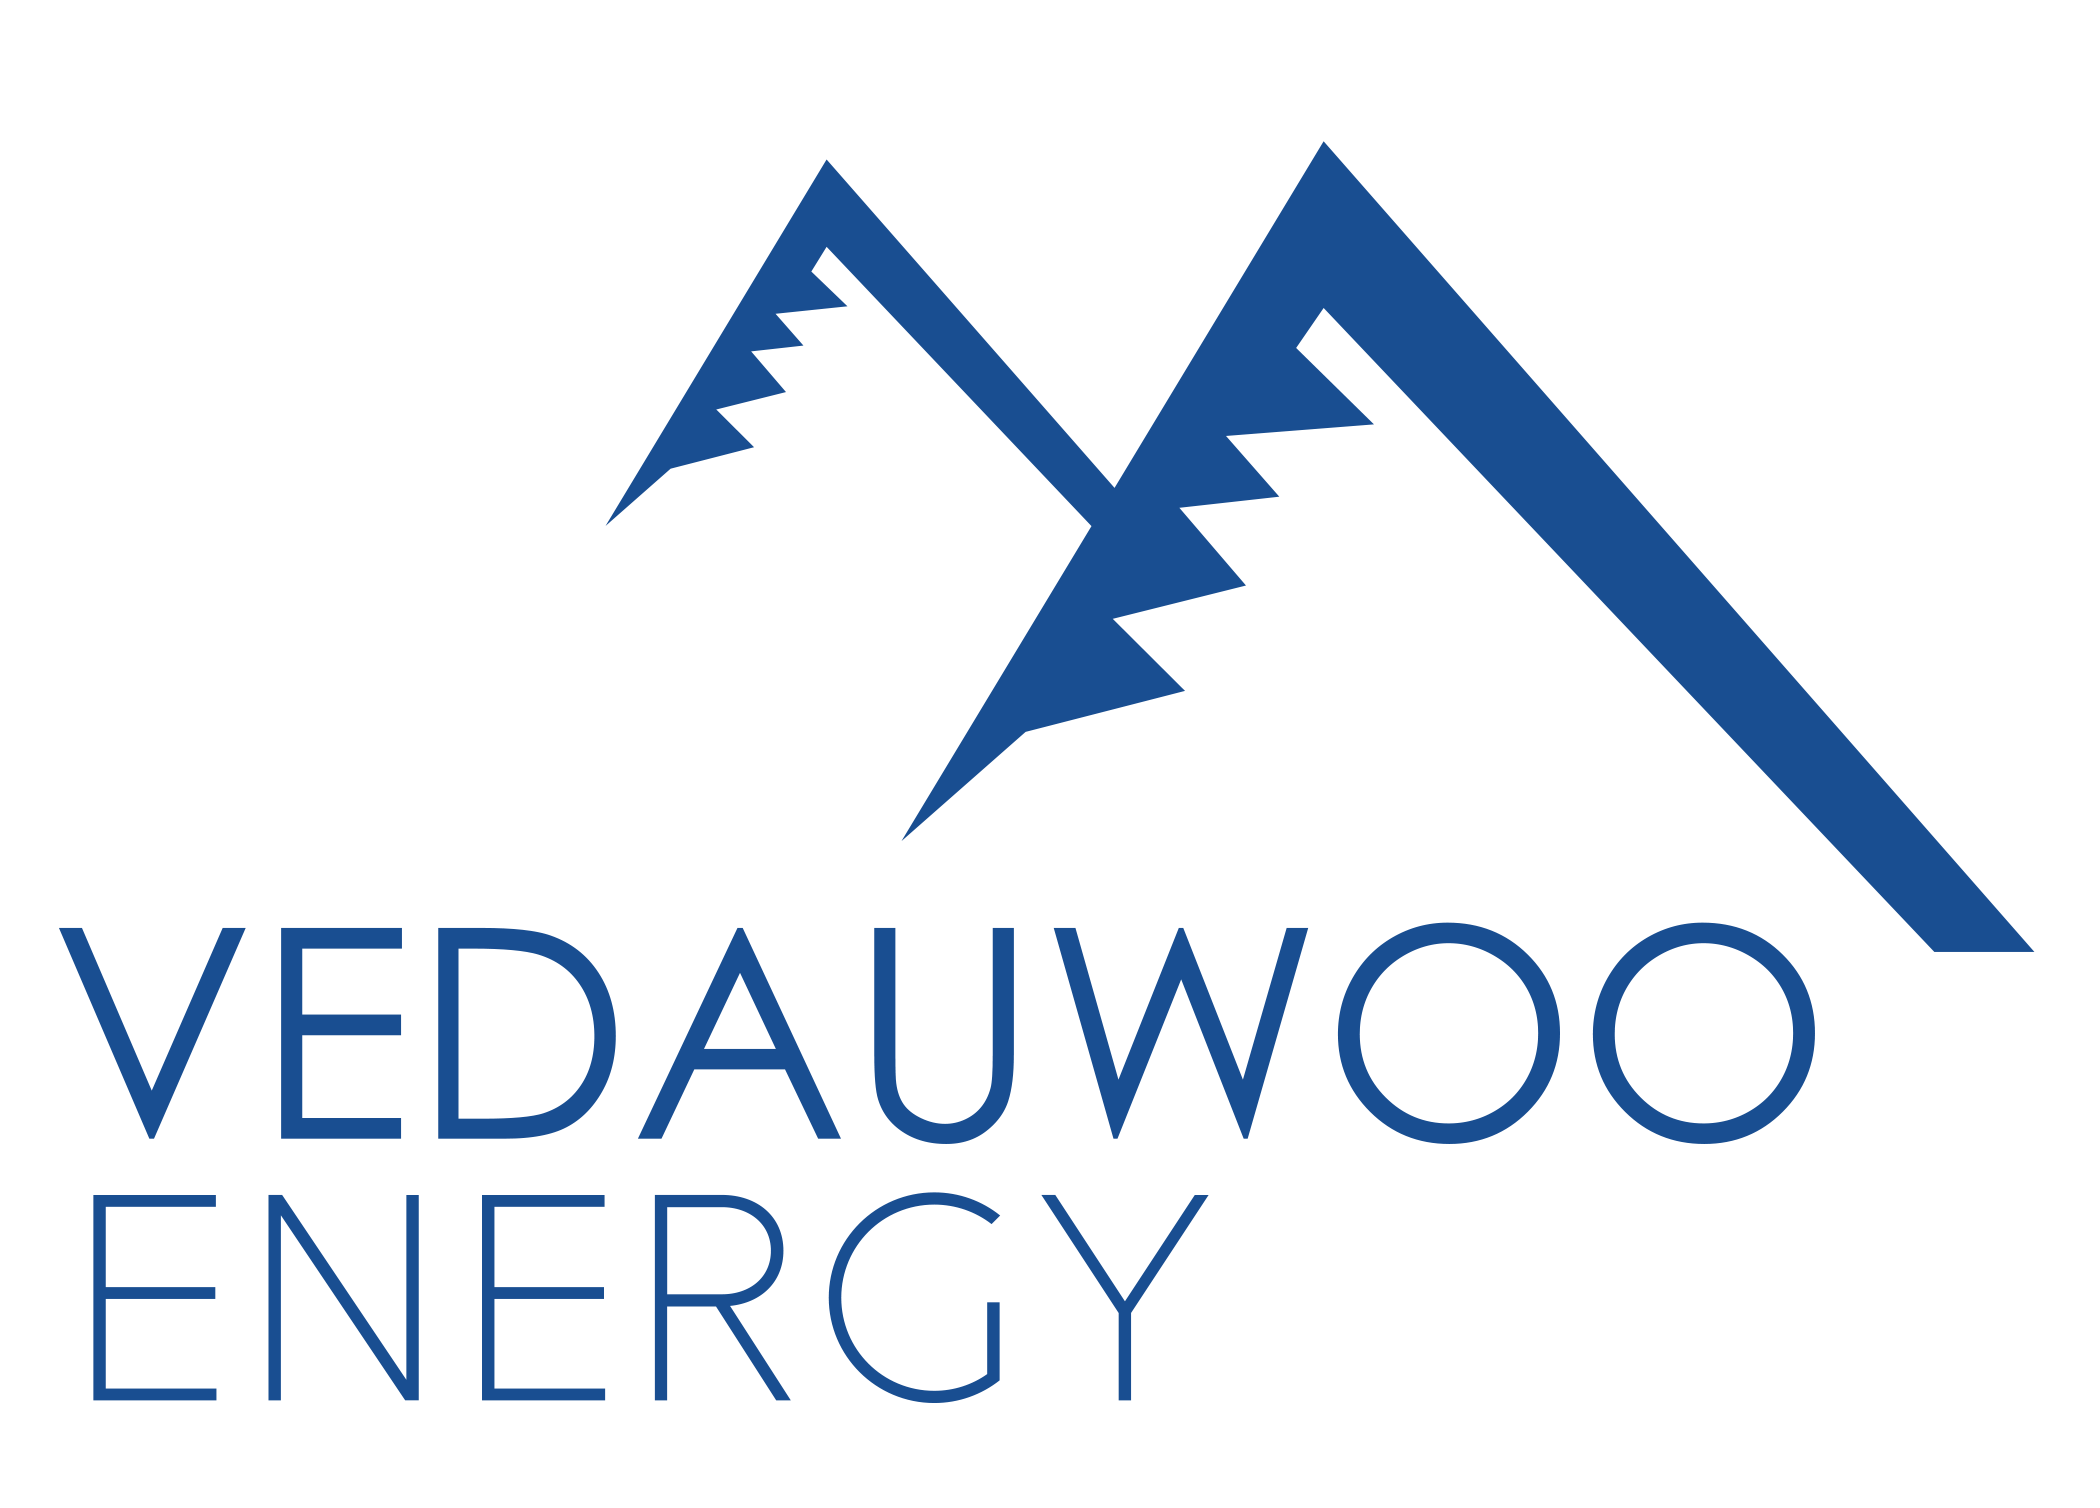 Vedauwoo Energy